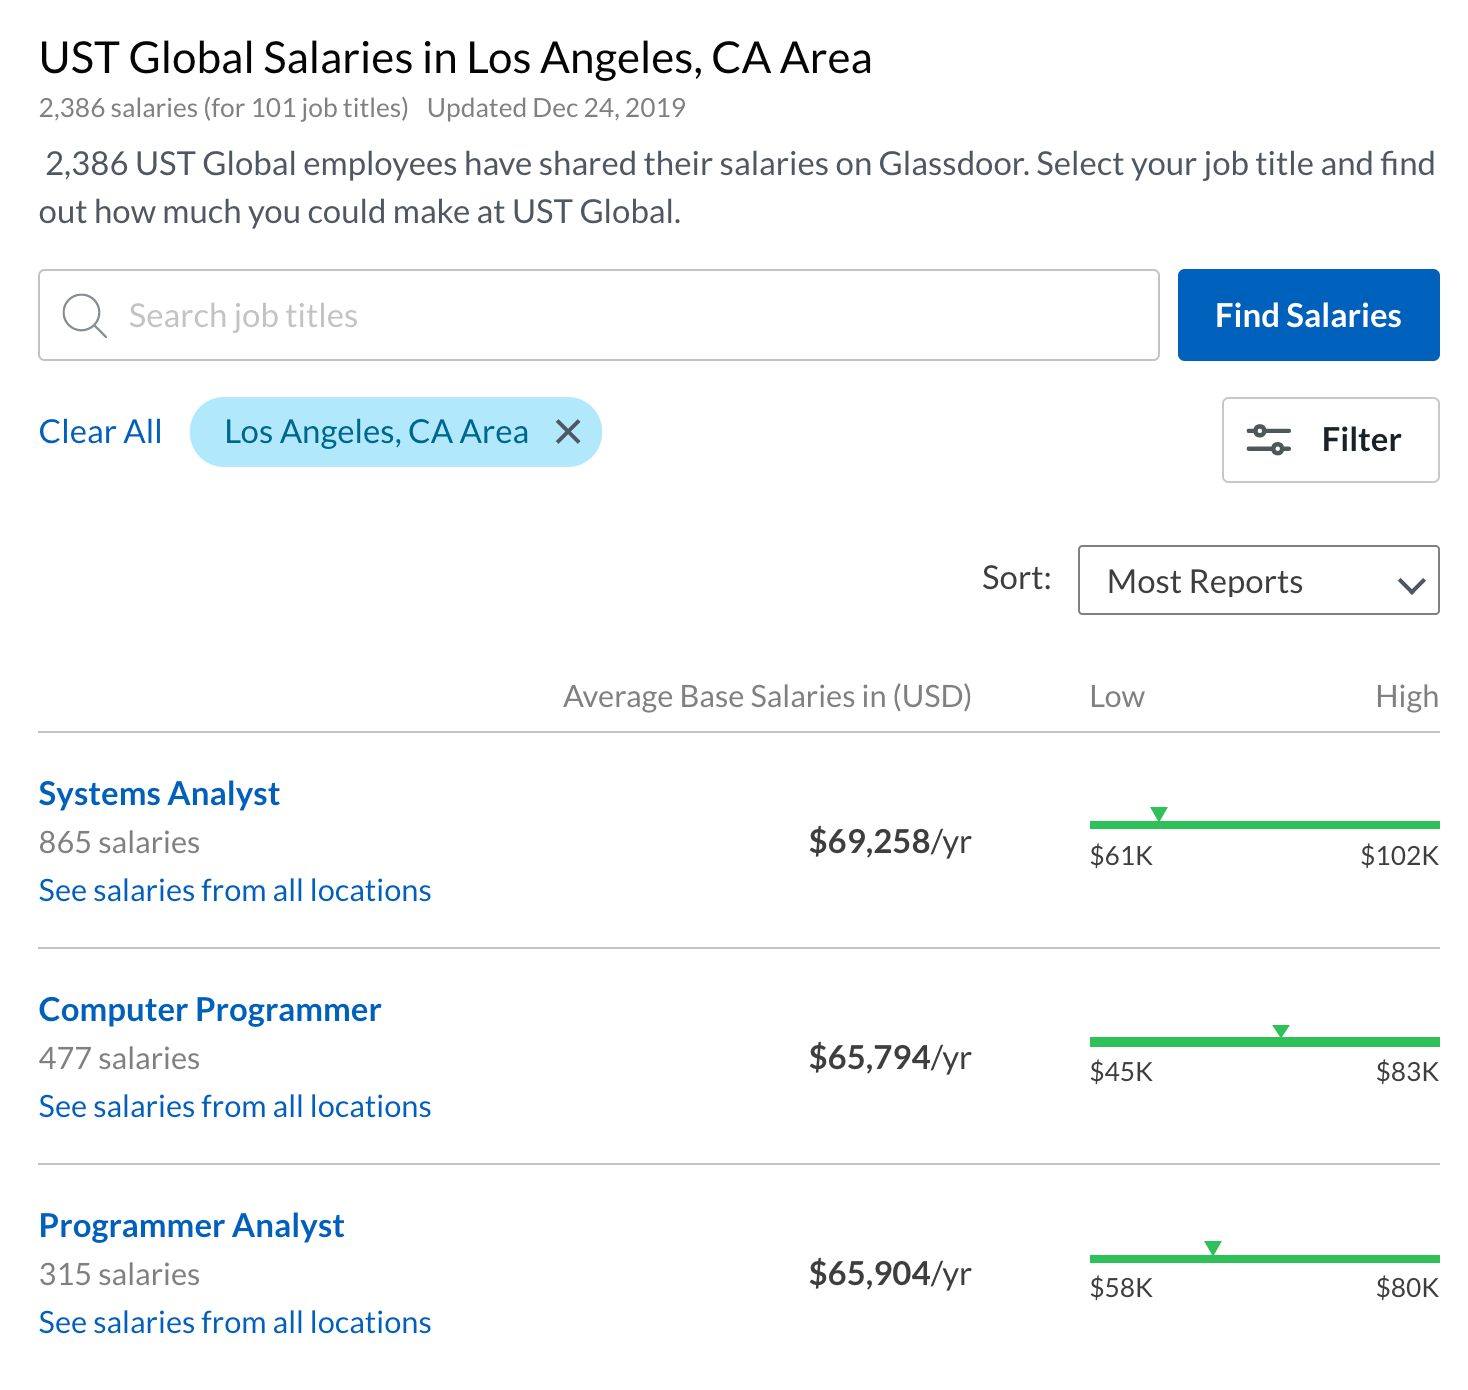 Годовые зарплаты разработчиков и аналитиков в компании UST, по данным сайта Glassdoor